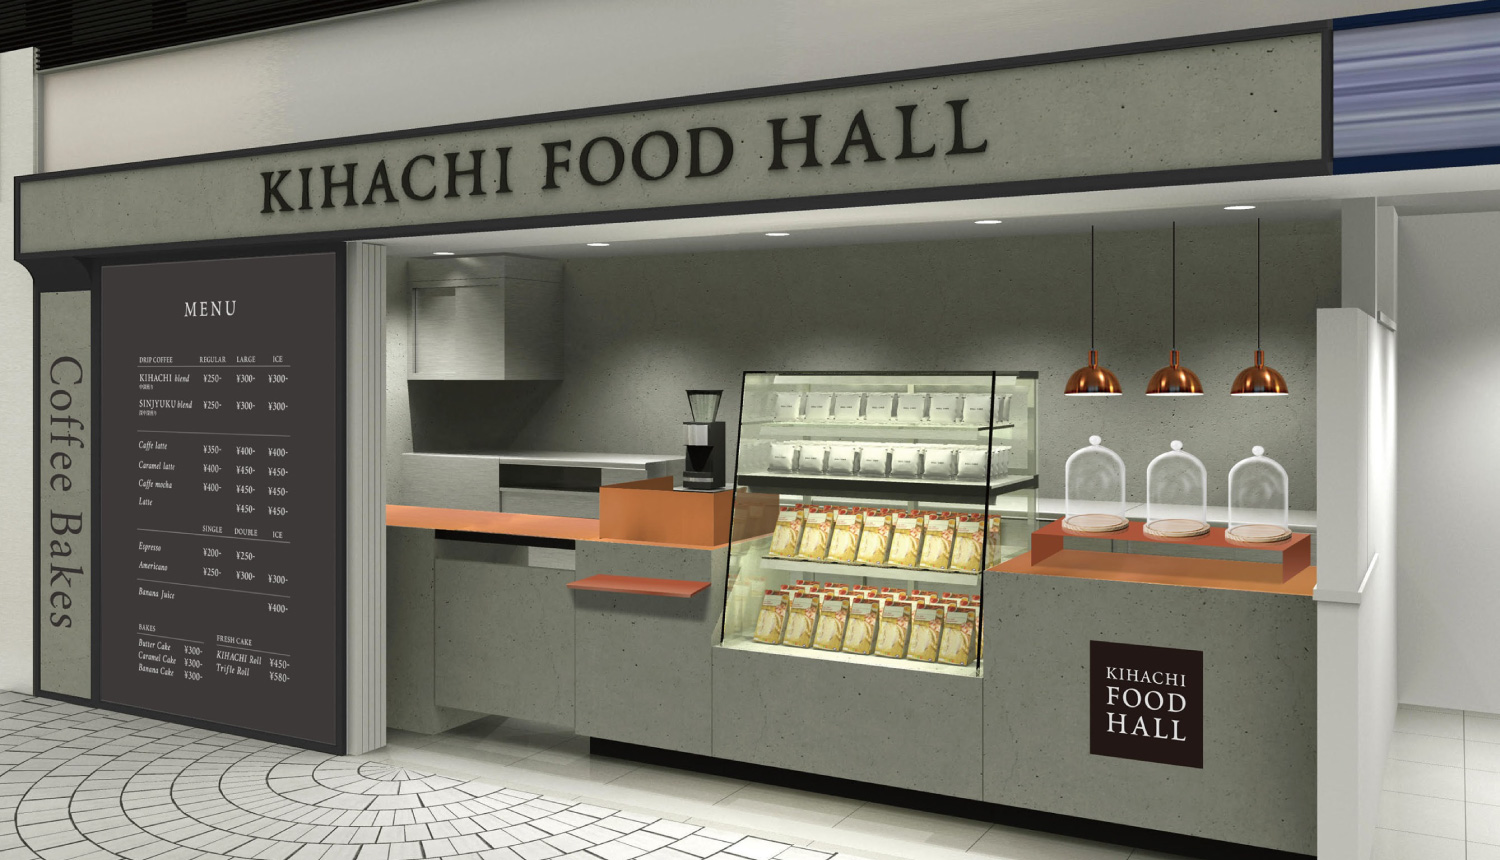 kihachi-food-hall-%e3%82%ad%e3%83%8f%e3%83%81%e3%83%96%e3%83%a9%e3%83%b3%e3%83%89-%e5%92%96%e5%95%a1%e6%96%b0%e5%ae%bf-2